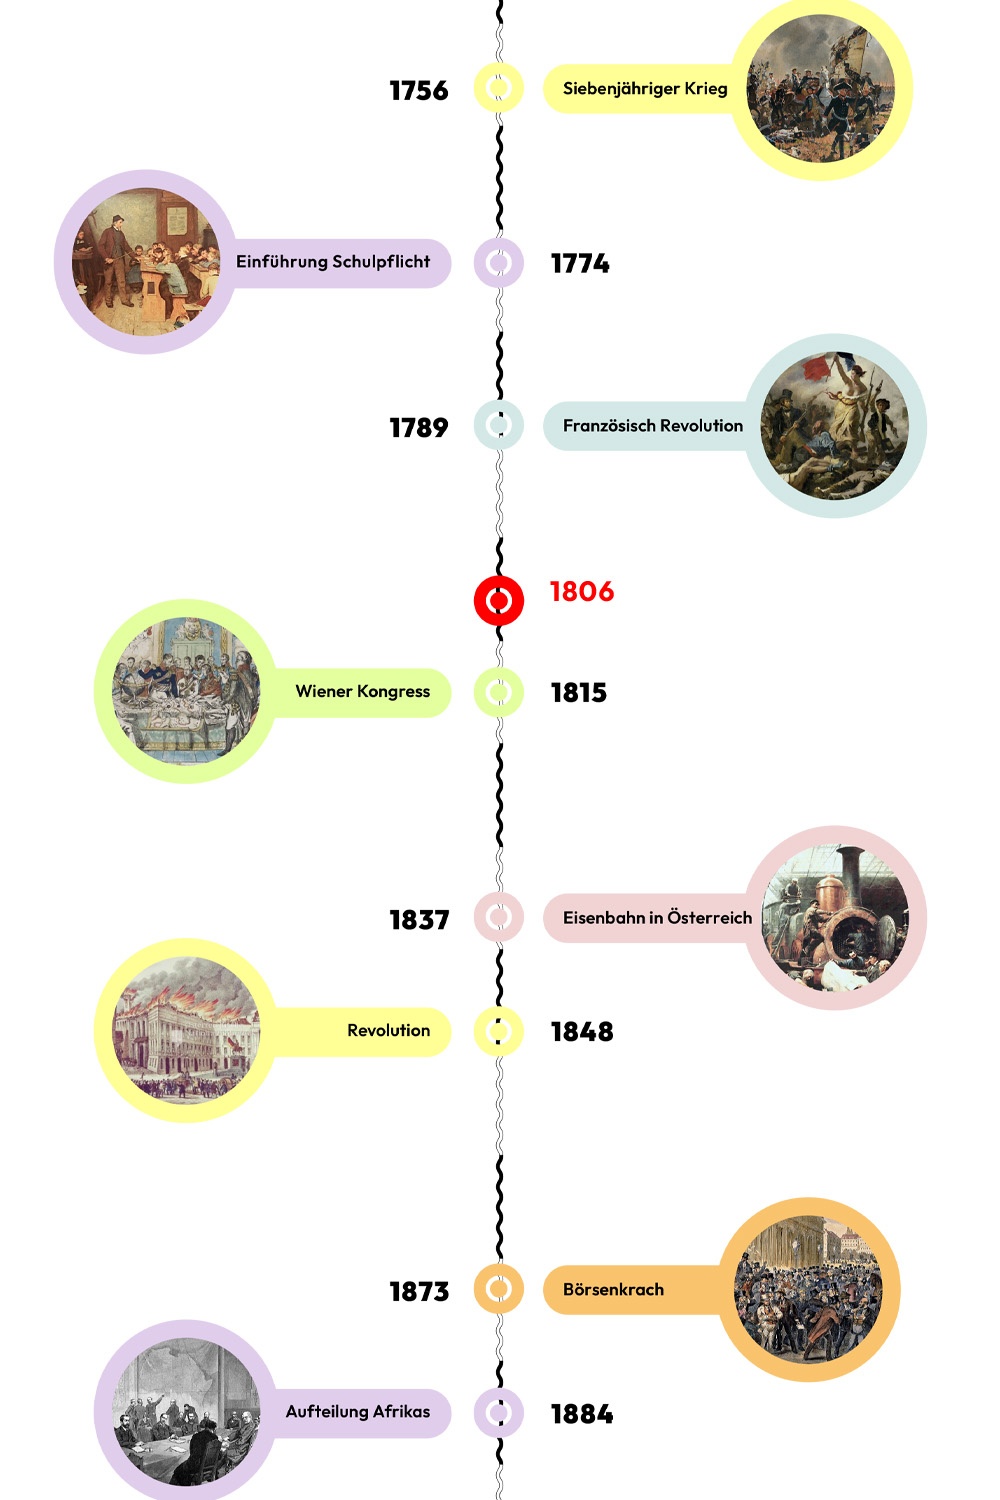 Zeitstrahl mit historischen Ereignissen - 1806 ist hervorgehoben © wasbishergeschah.at